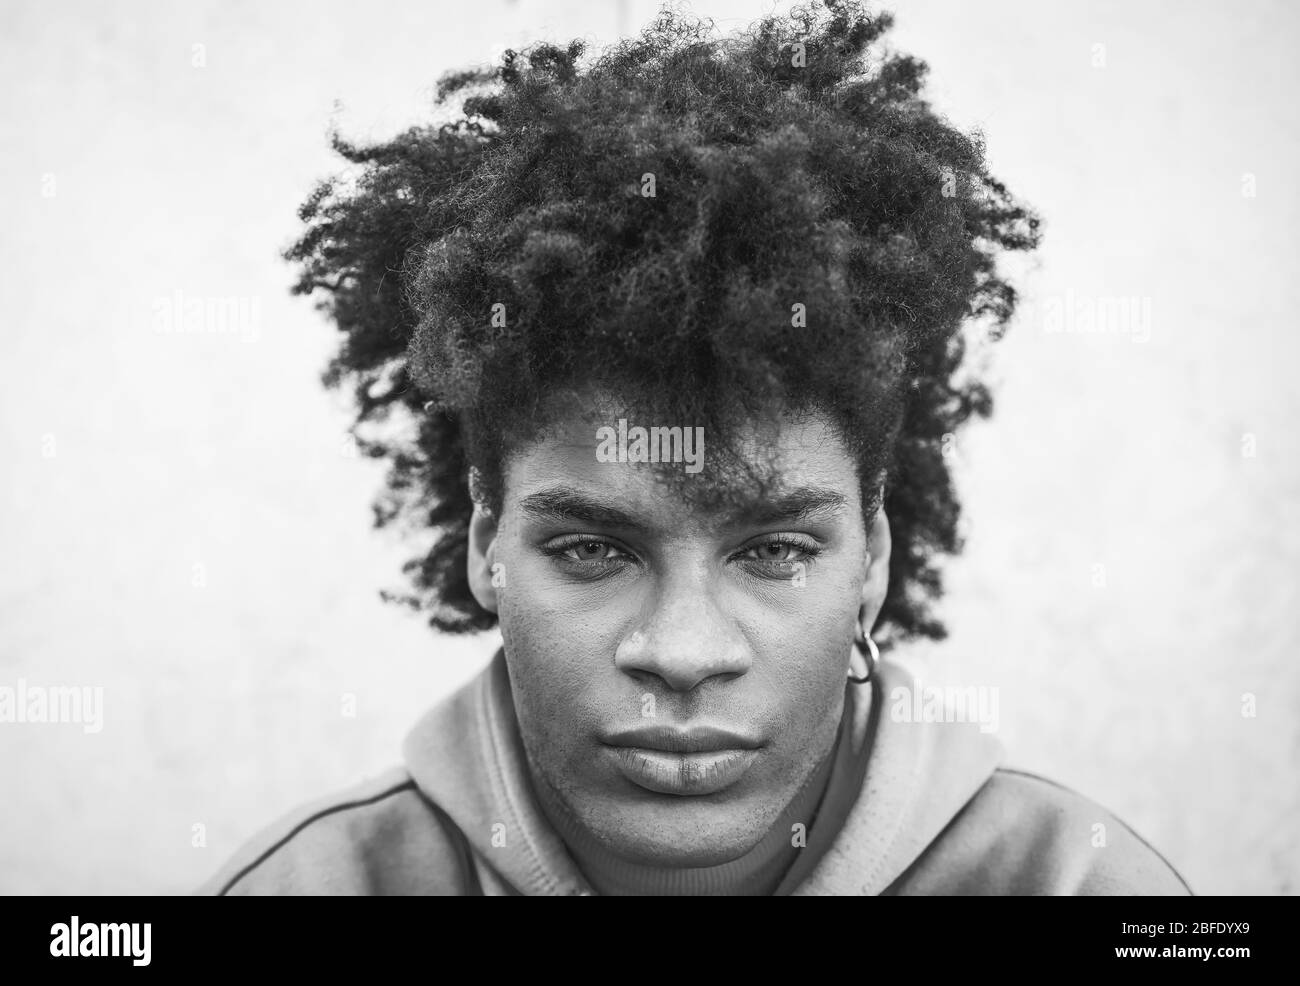 Mixed race junger Mann Porträt - glücklich afro Kerl posiert vor der Kamera - Millennial Generation und Multi Ethnicity Konzept - Schwarz-Weiß-Schnitt Stockfoto